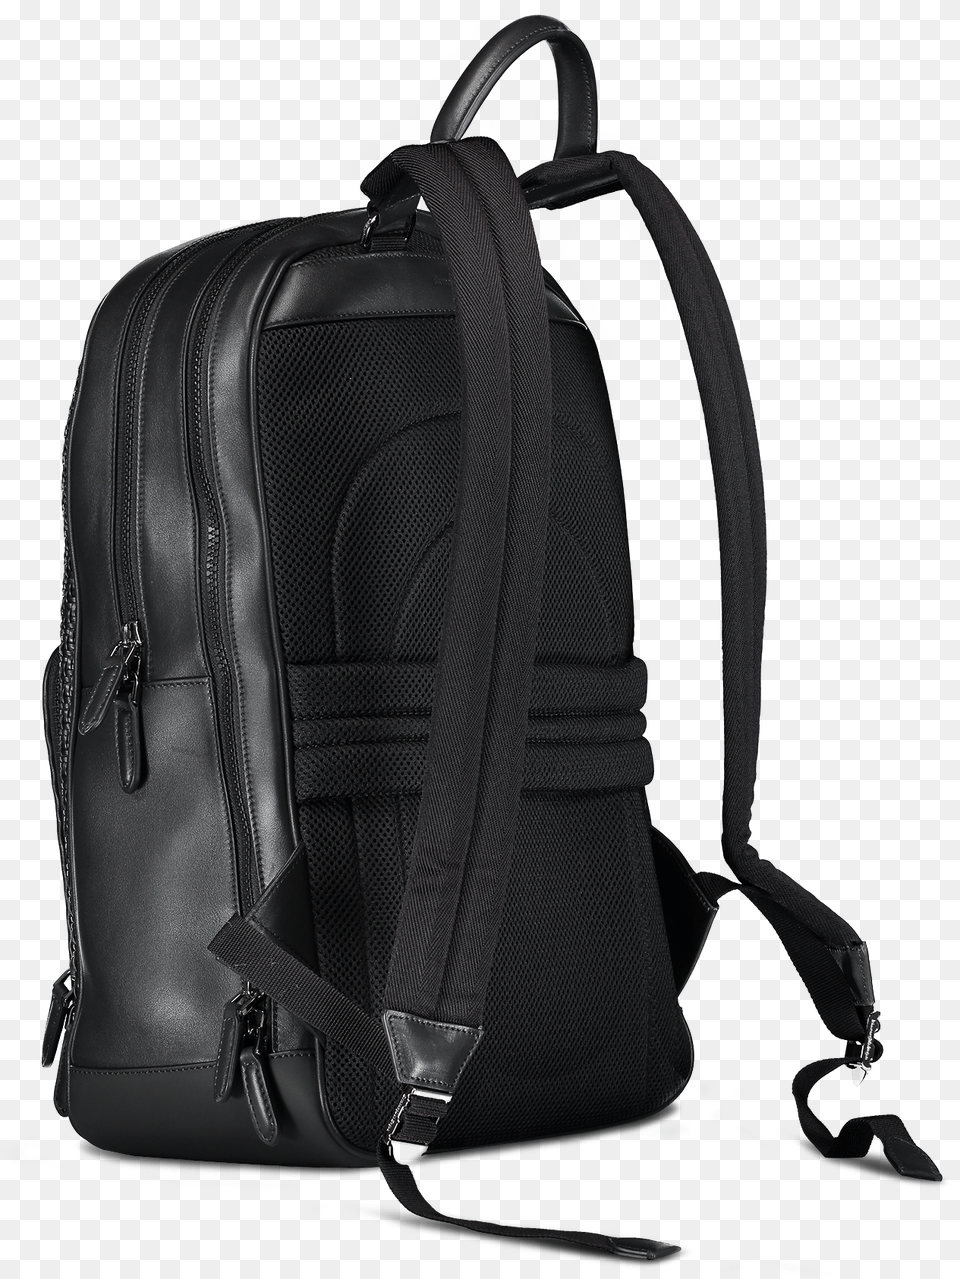 Business Backpack Transparent Background Laptop Bag Png Image